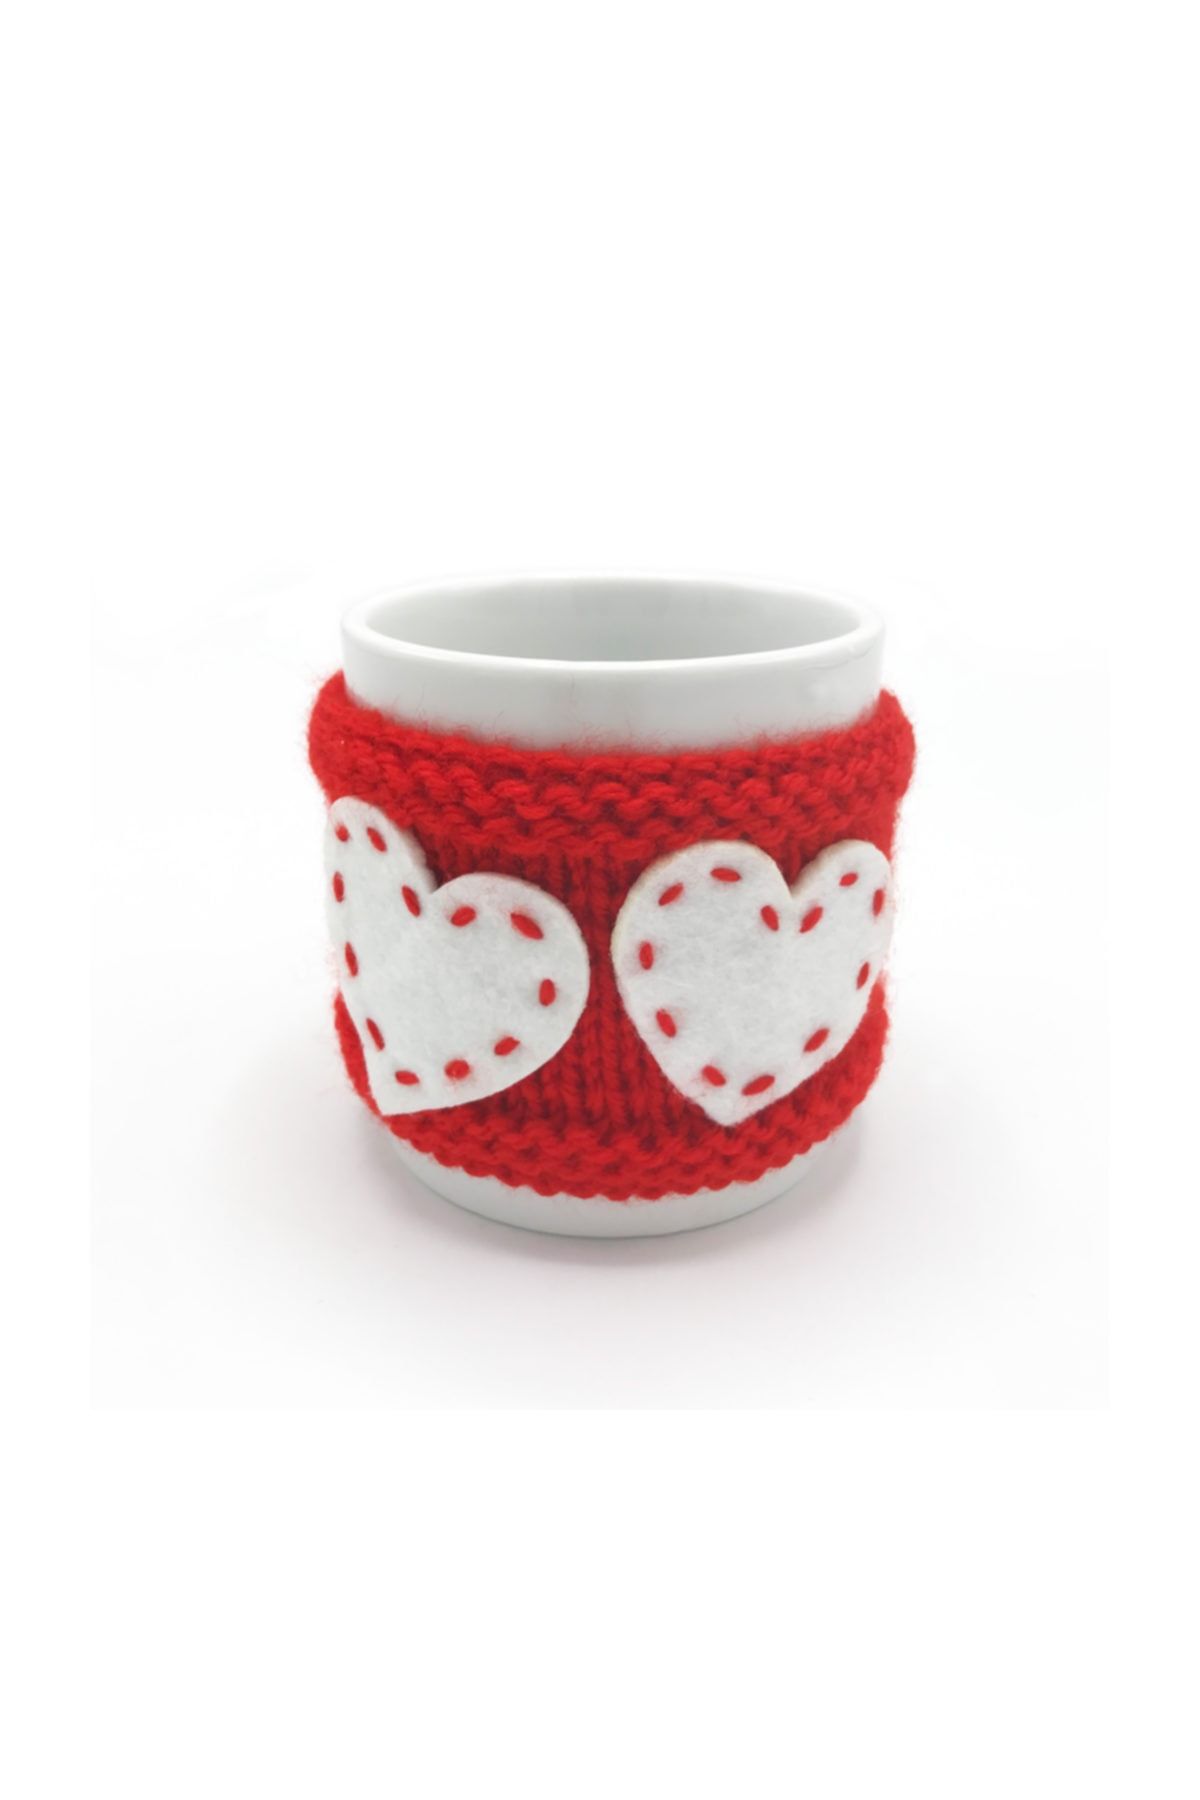 Güral Porselen Kırmızı Kalpli Örgü Kupa, Sevgiliye Hediye, Sevgililer Günü, Doğum Günü, Kalpli Kupa